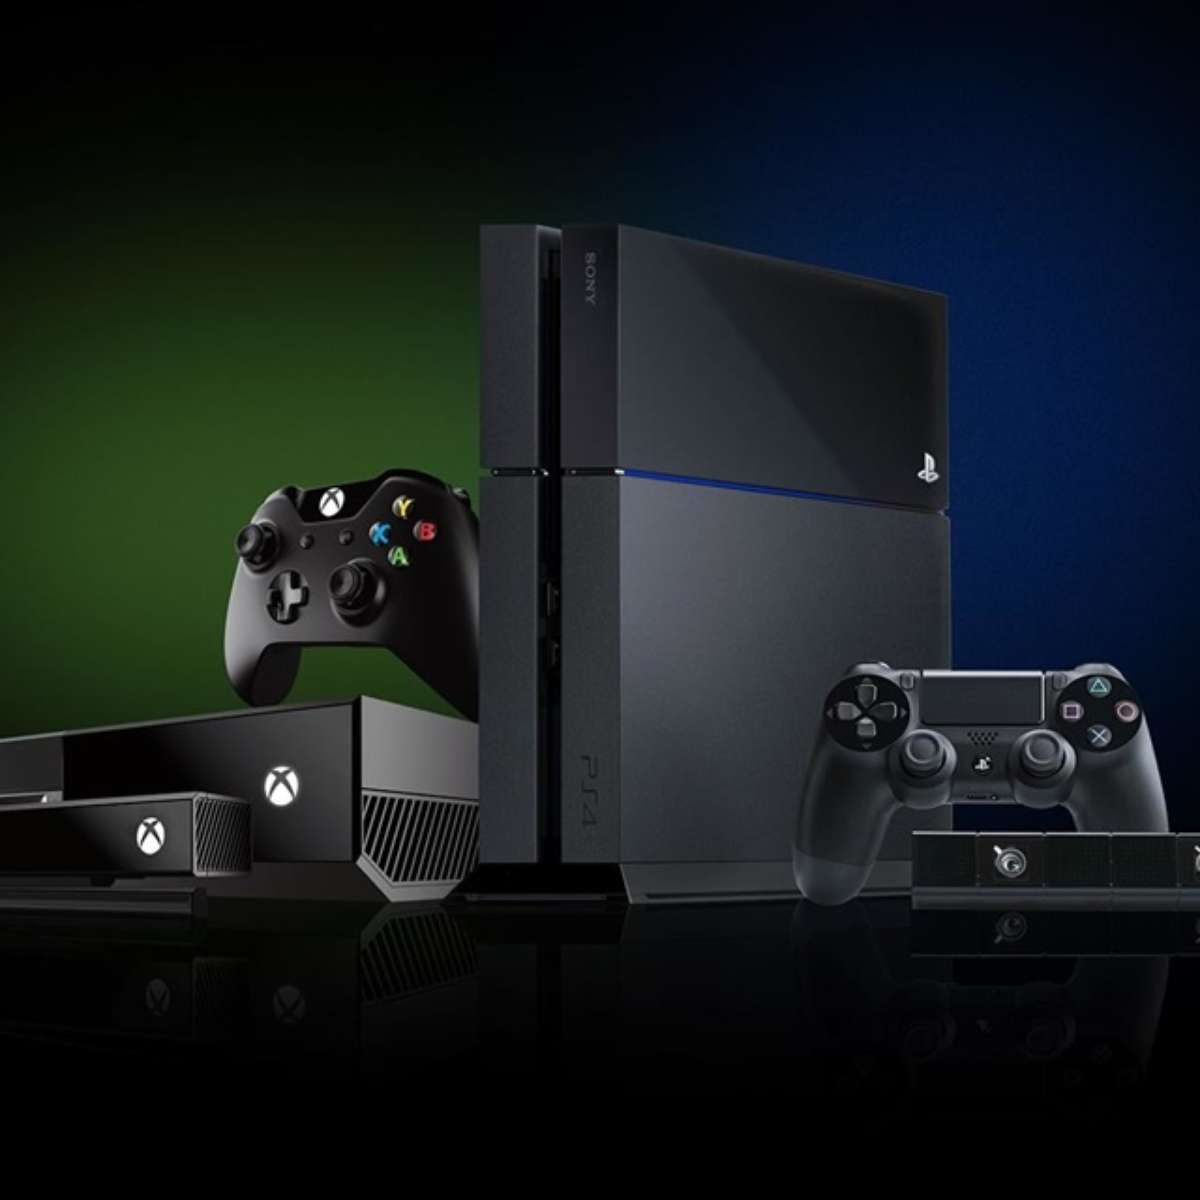 Xbox Series X sofre aumento de preço em alguns países; veja